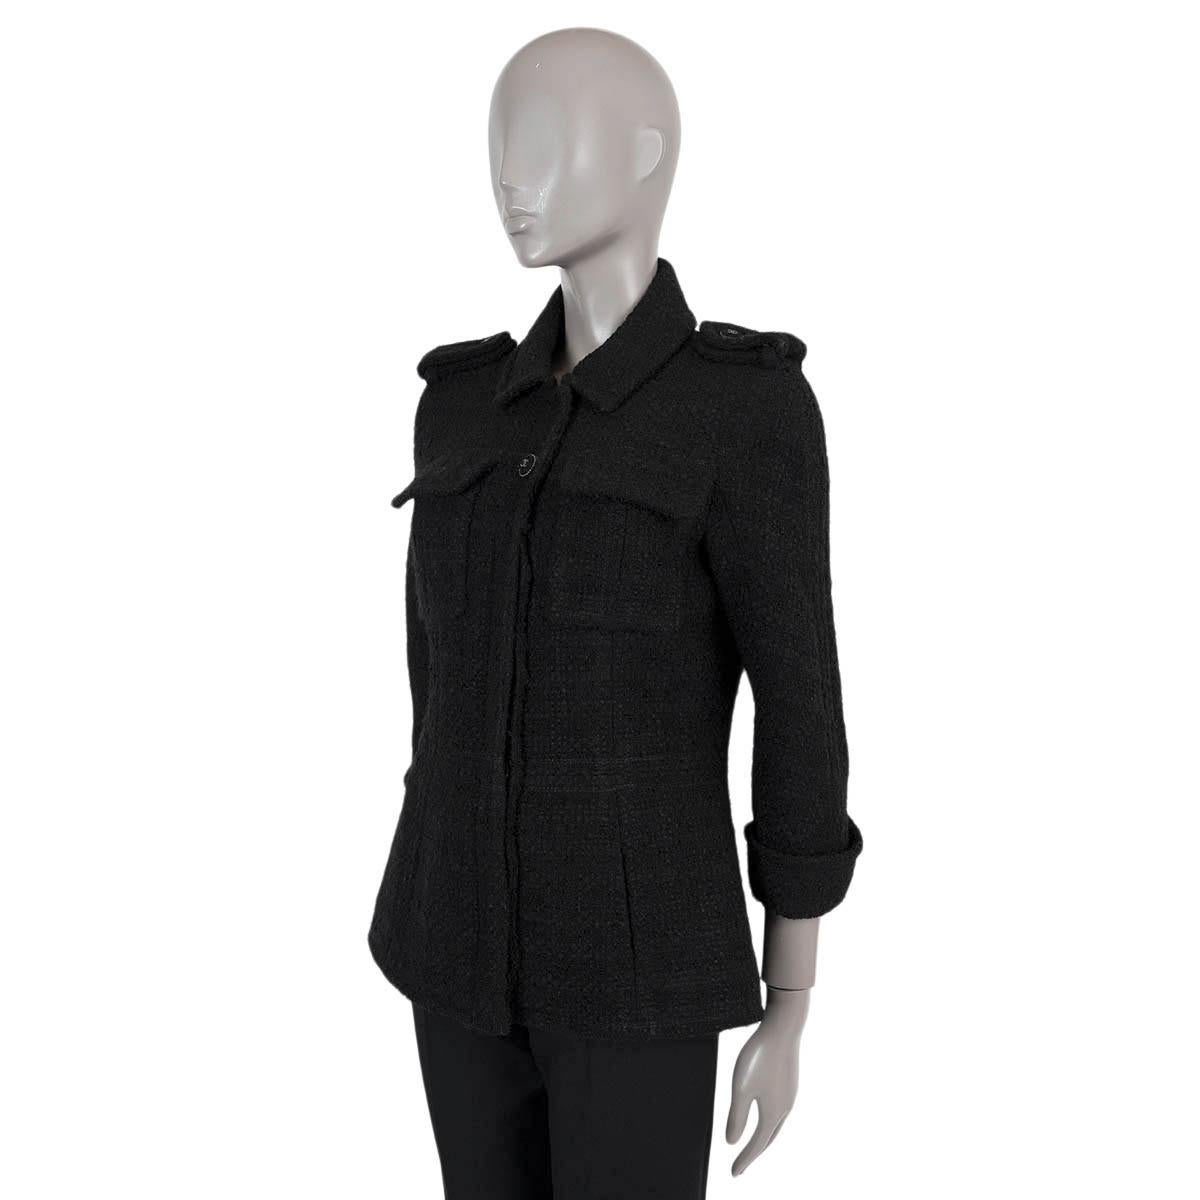 100% authentique Chanel petite veste en tweed noir en laine (93%) et polyamide (7%). Il présente une silhouette ajustée, des épaulettes, des manches 3/4 à revers et deux poches à rabat sur la poitrine. Il se ferme par des boutons CC sur le devant et